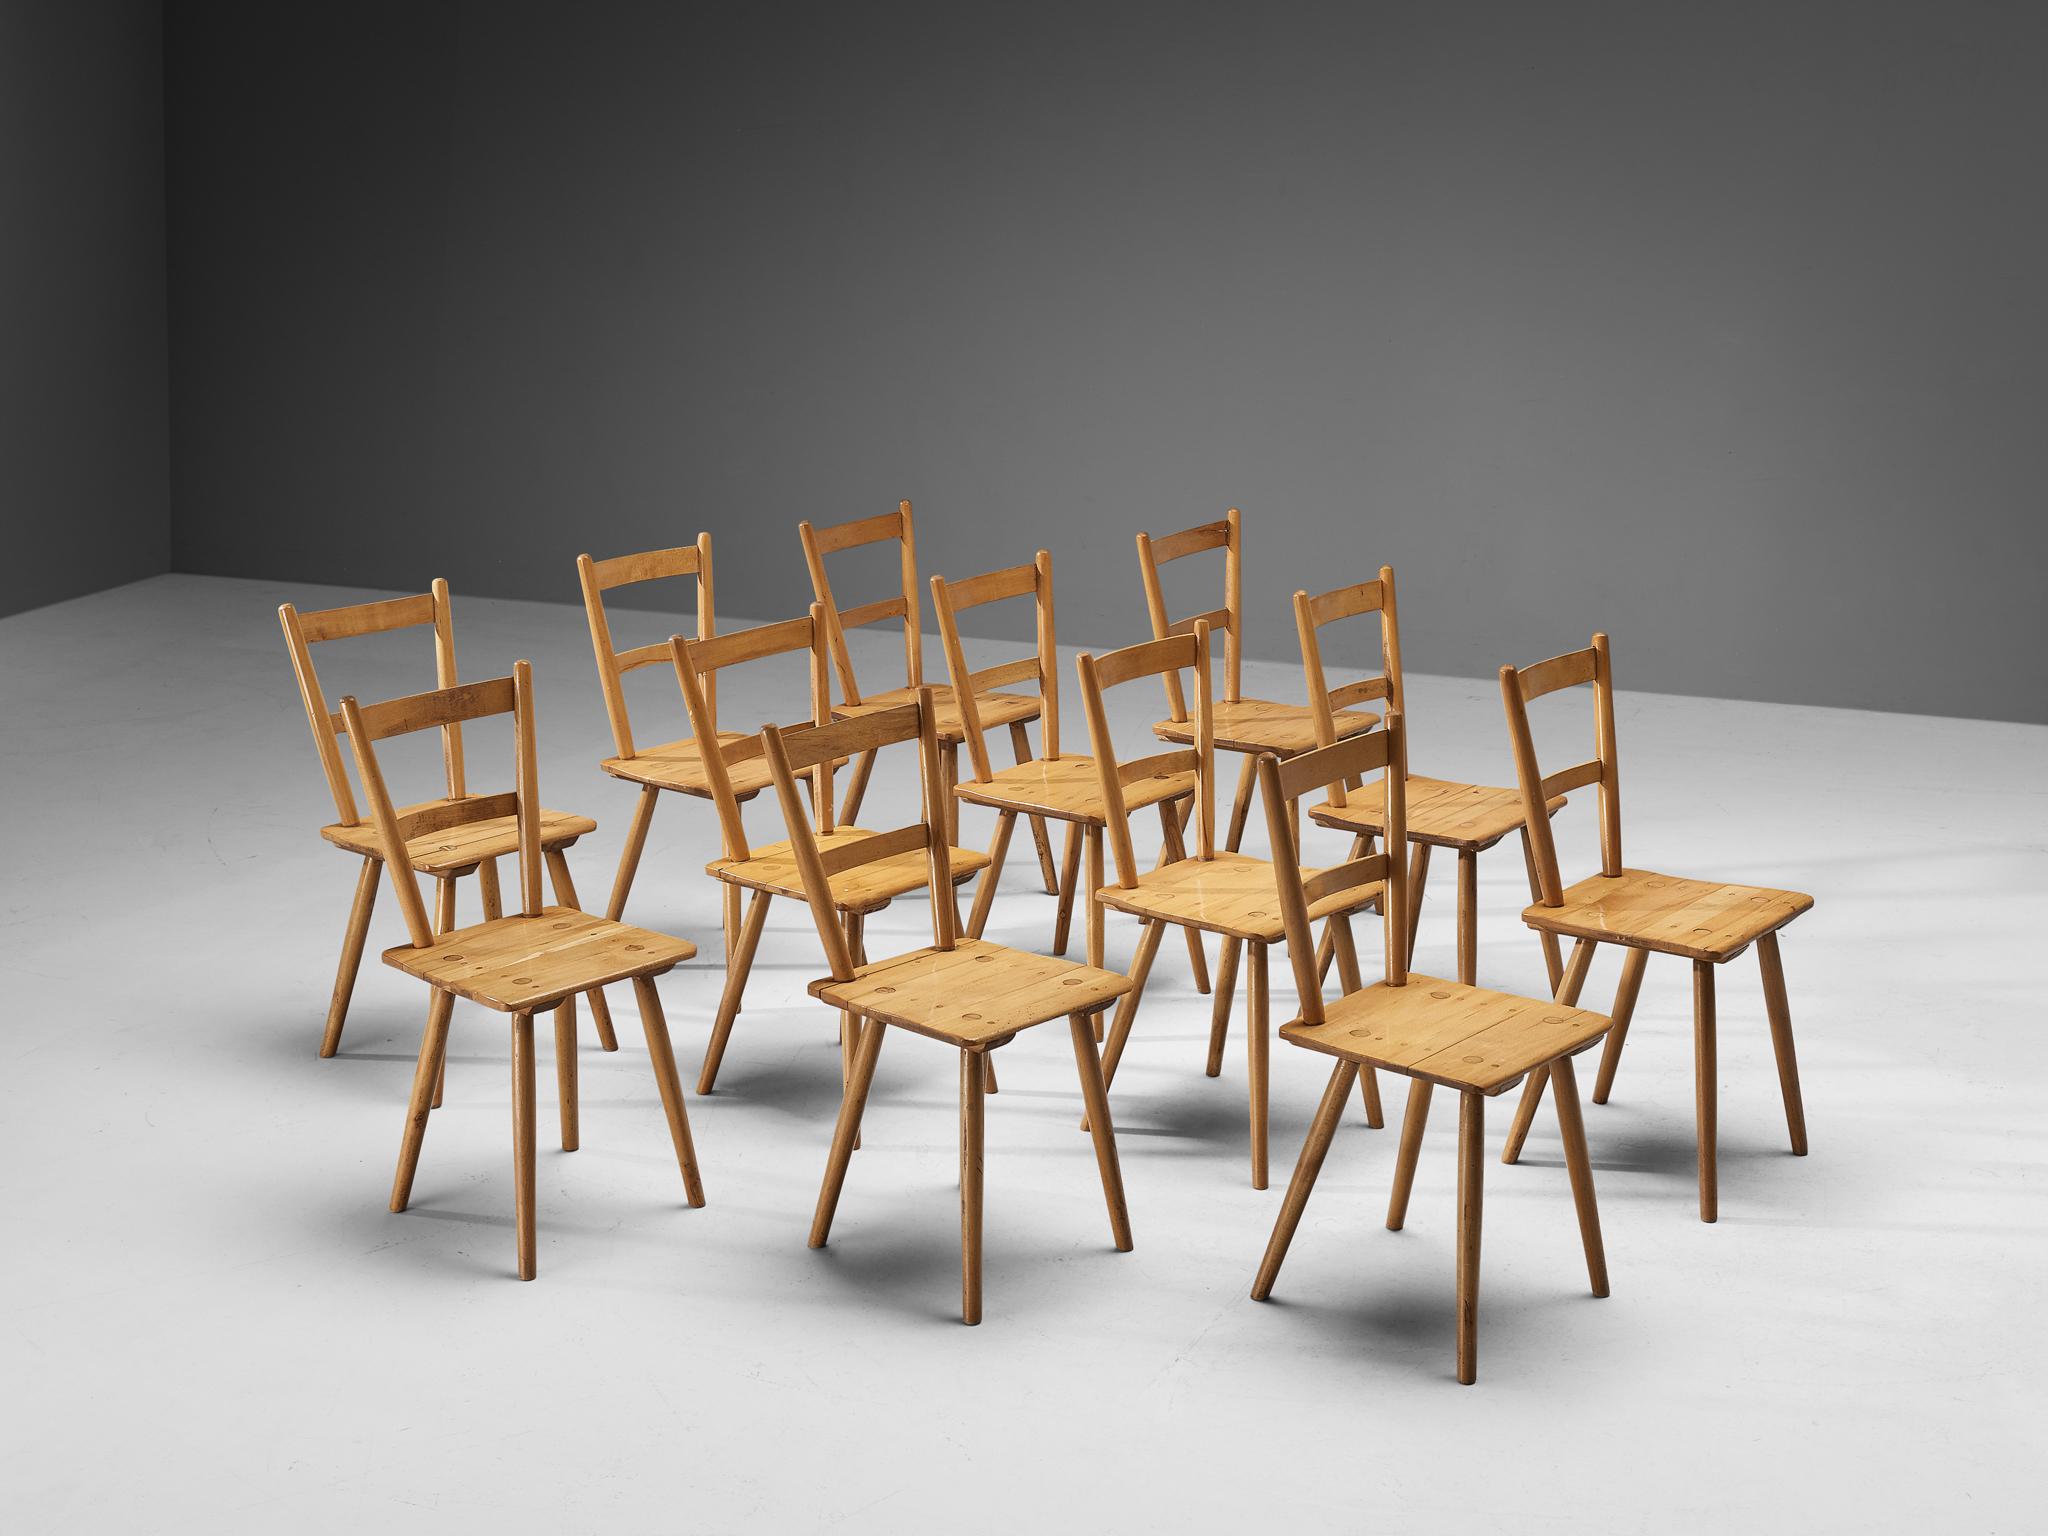 Chaises de salle à manger en hêtre, Pays-Bas, années 1960. 

Grand ensemble de douze chaises de salle à manger hollandaises modestes. Ces chaises modernes rappellent le style des créations du fabricant de meubles britannique Ercol. Ces chaises